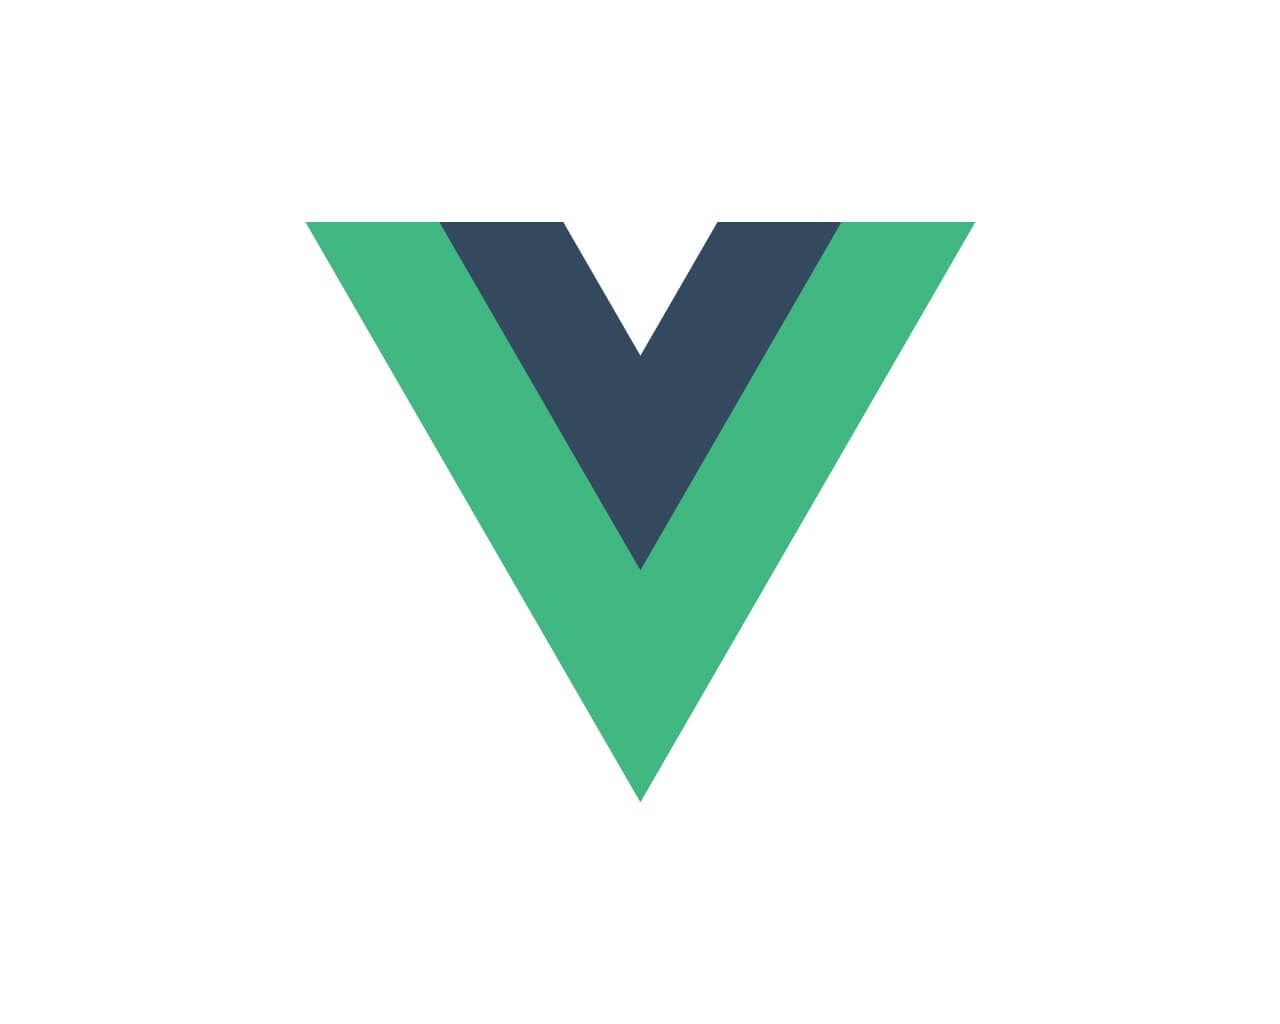 [Vue.js]UdemyでVue.jsを勉強してみます〜講座の内容と受講準備と基本的な使い方